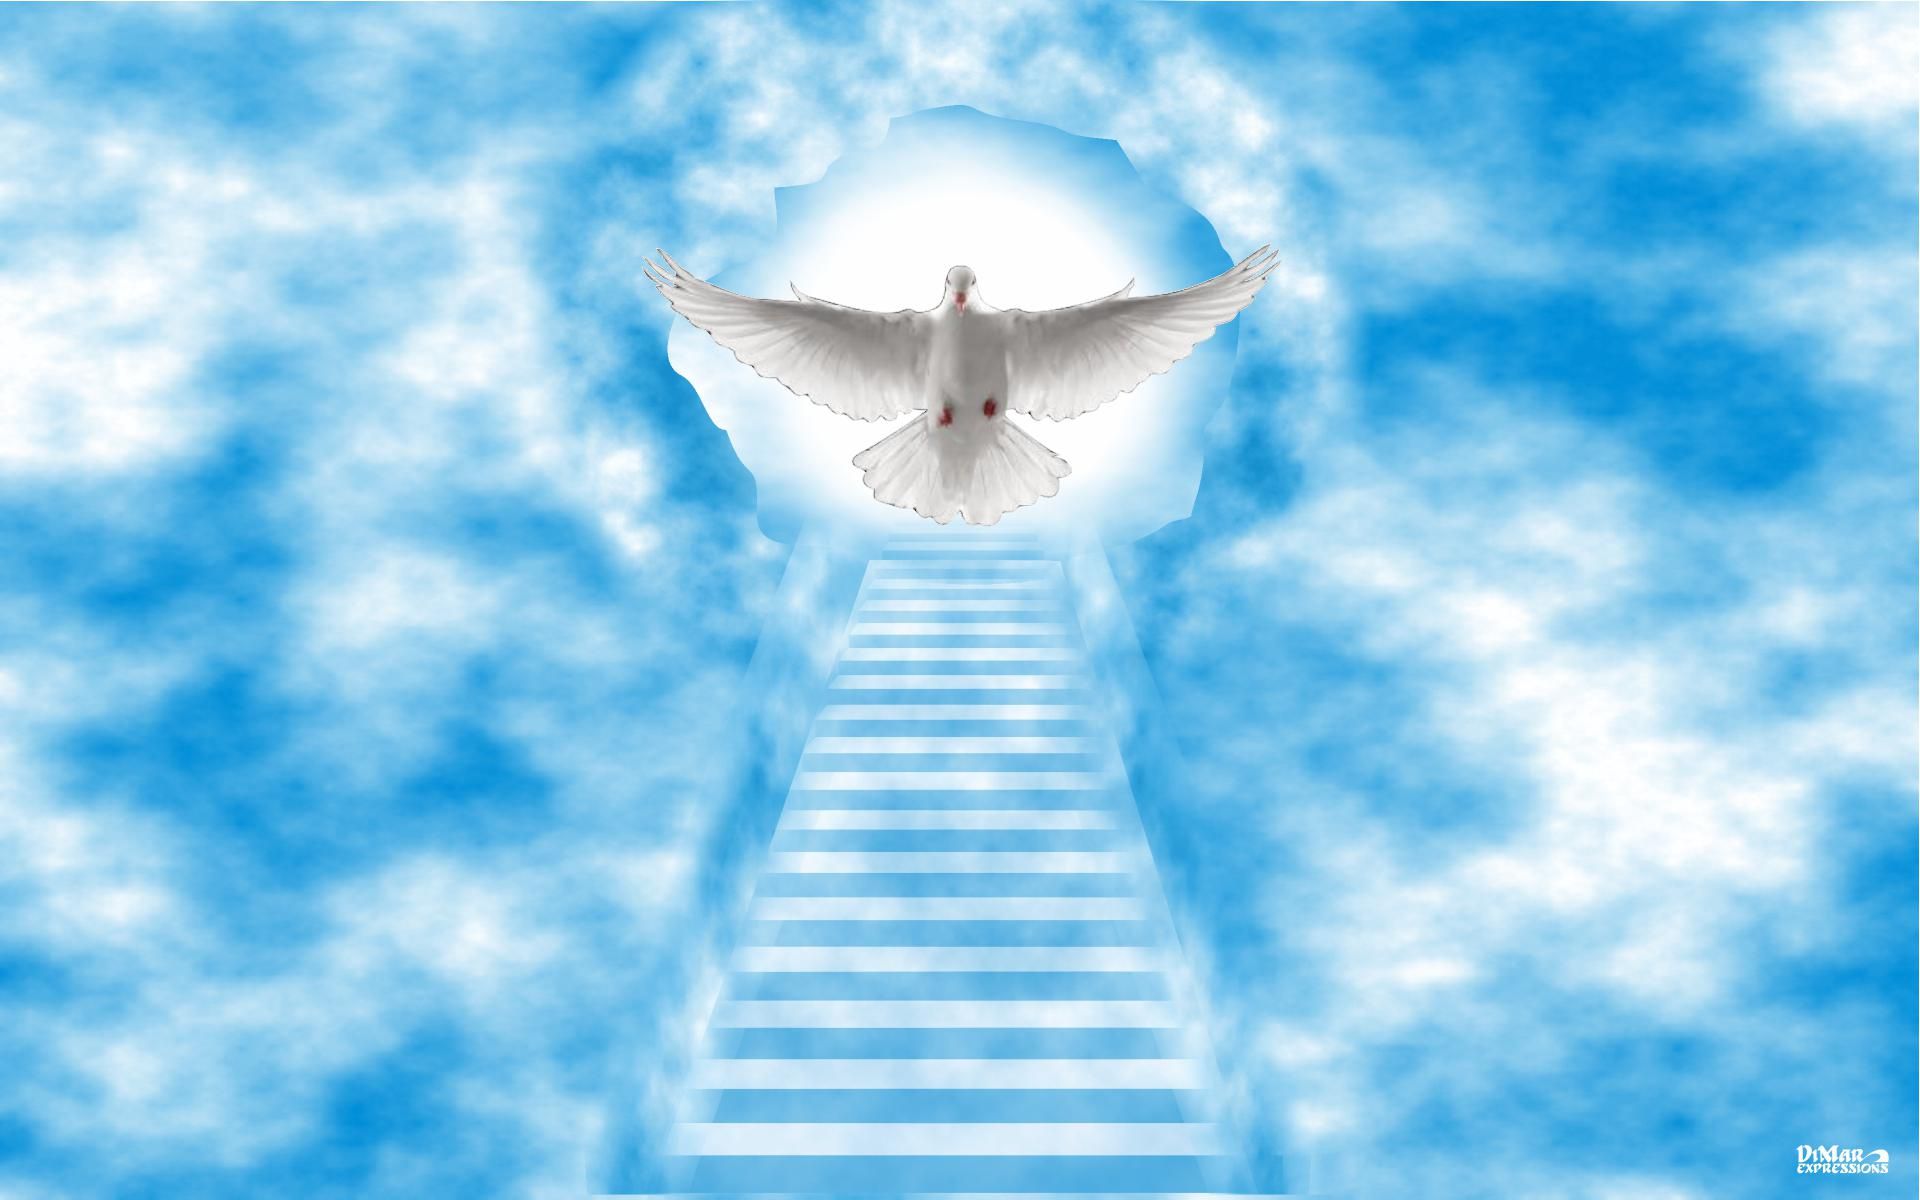 stairway to heaven wallpaper. Heaven wallpaper, Stairway to heaven, Way to heaven